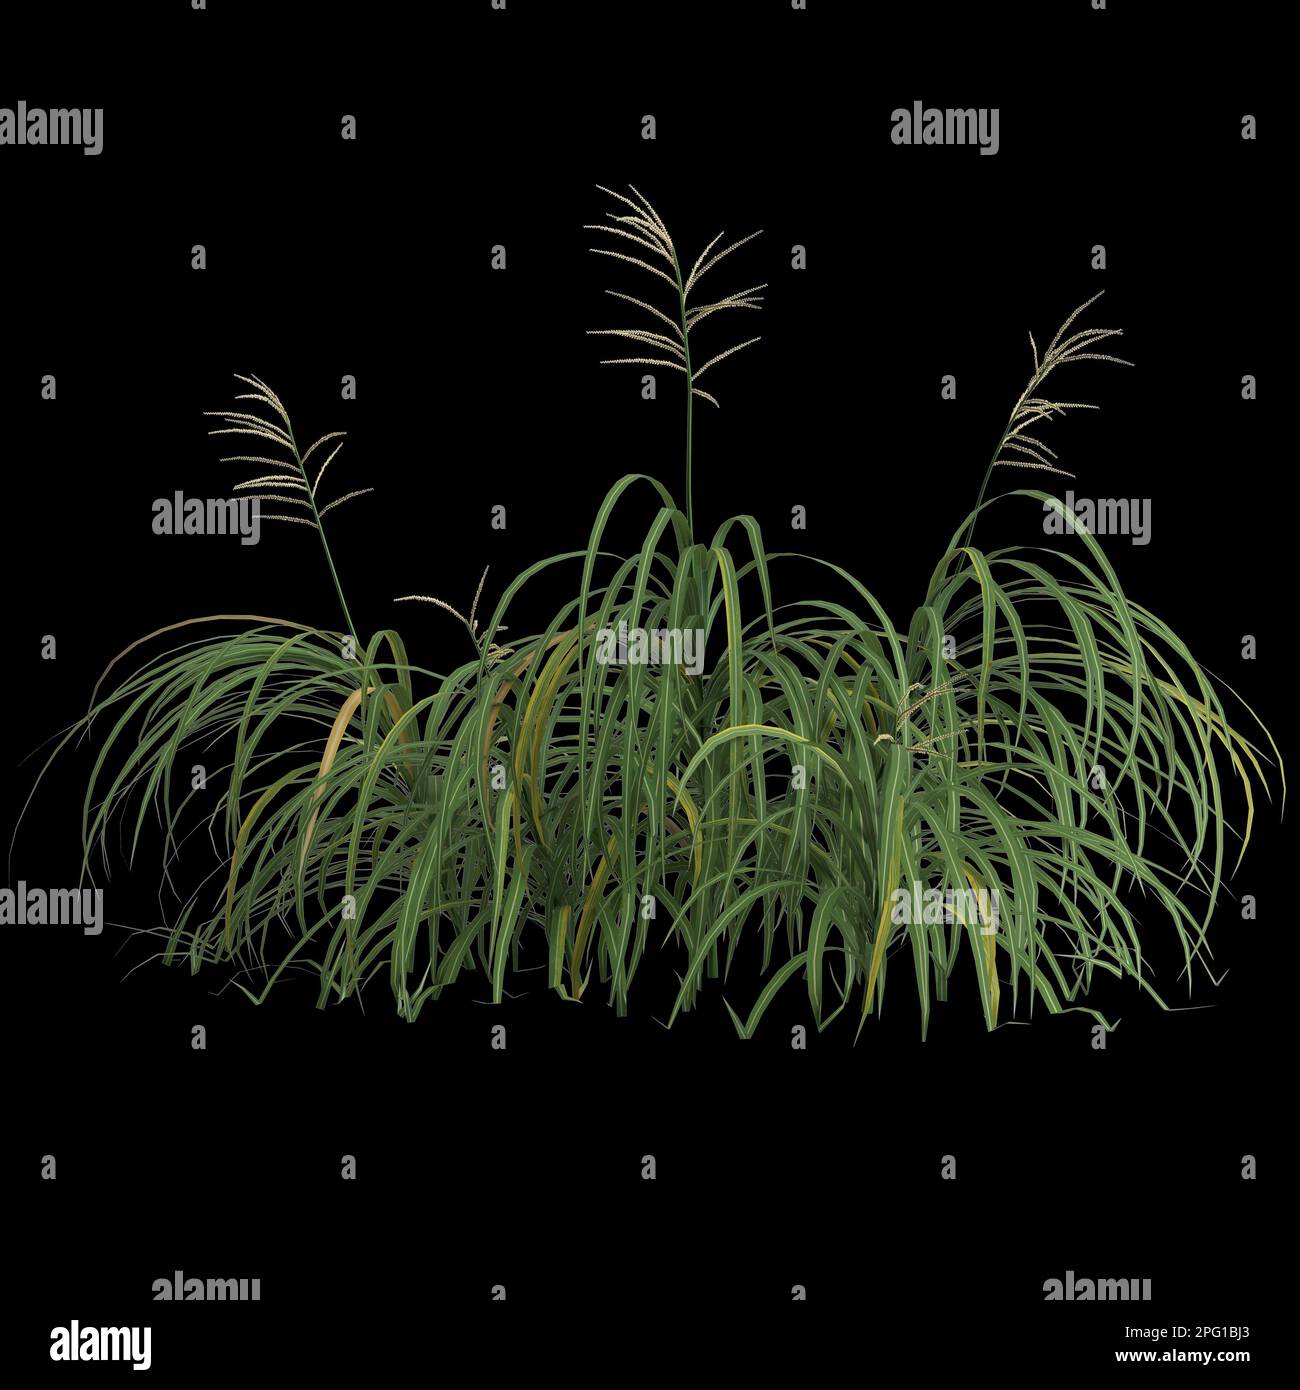 3d illustration of miscanthus bush isolated on black background Stock Photo